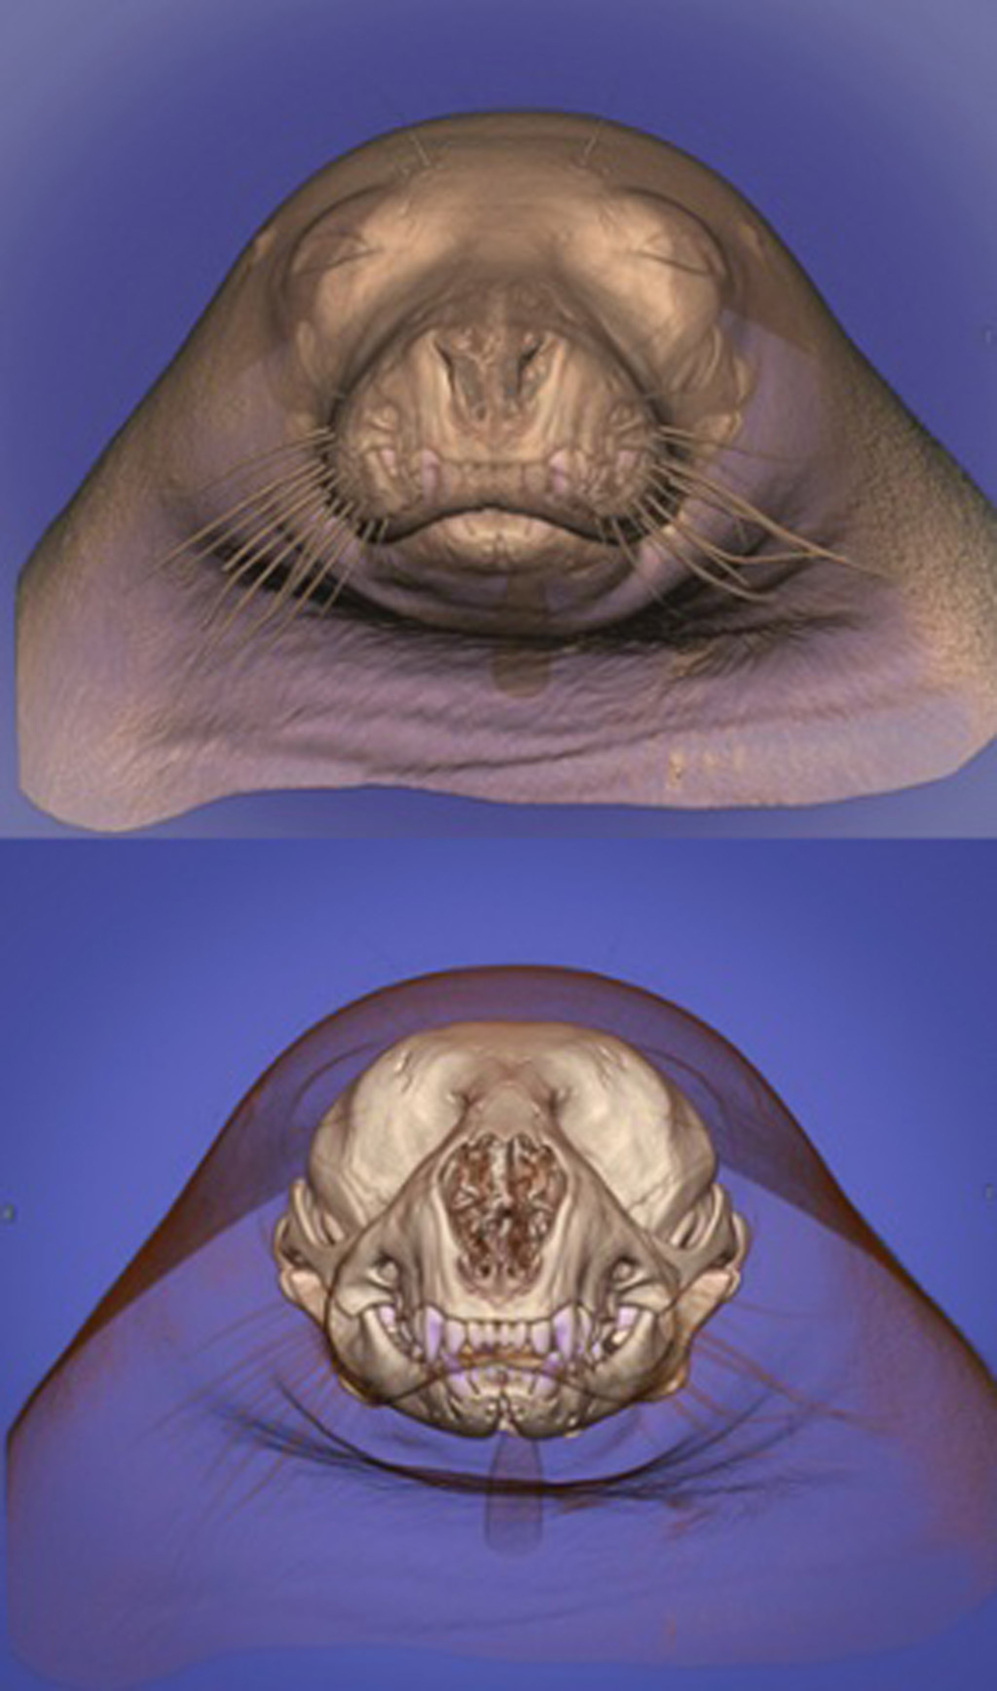 Tomografa de la cabeza de una foca cuyo crneo se puede visualizar...